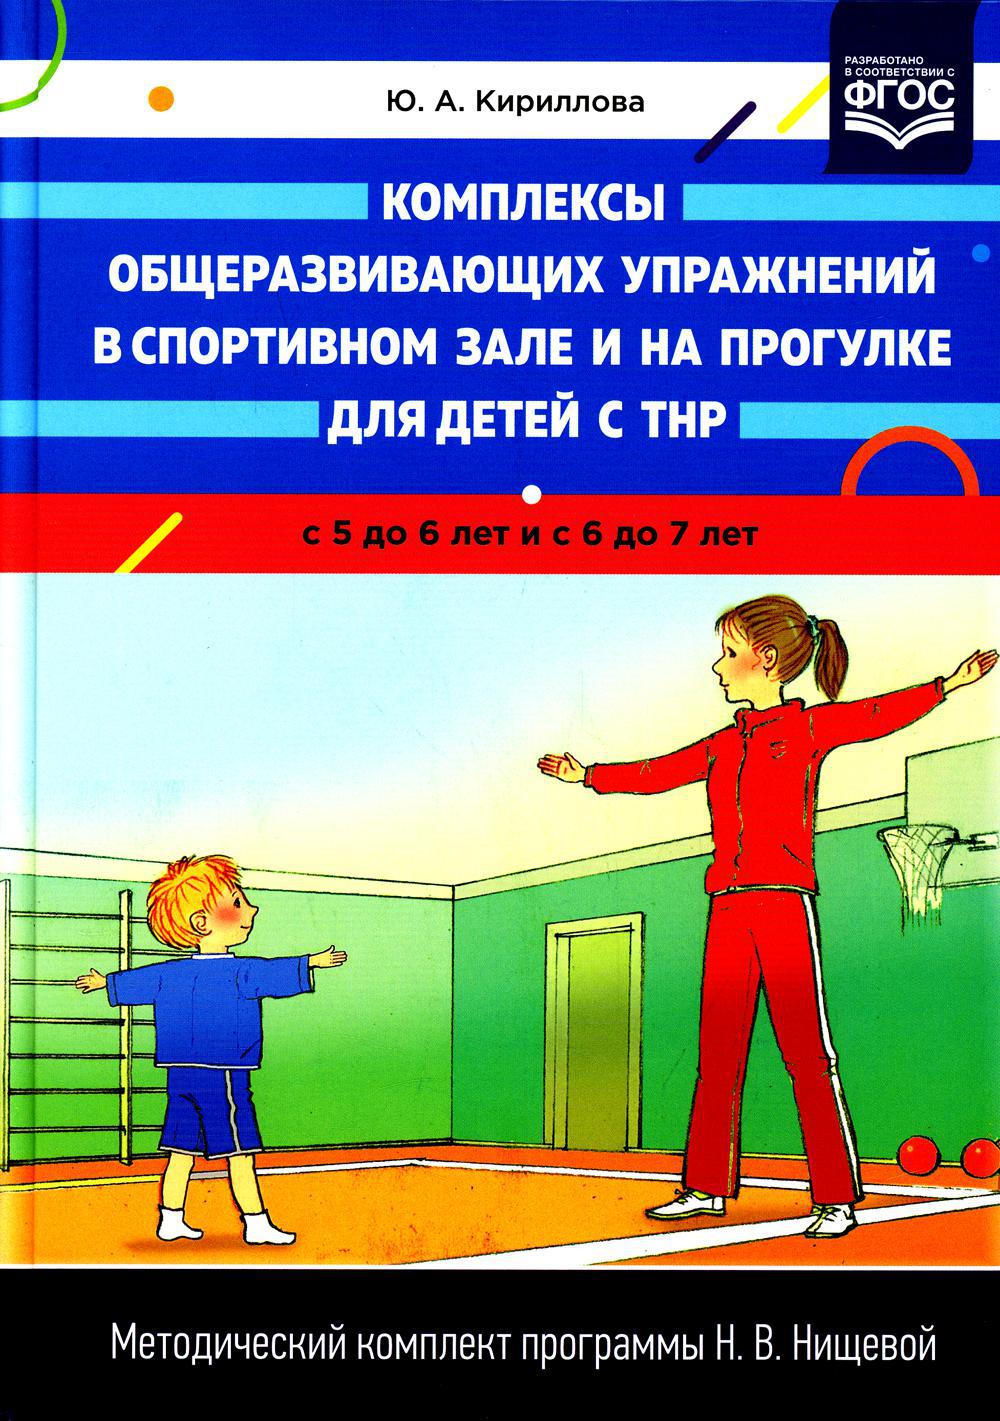 Комплексы общеразвивающих упражнений в спортивном зале и на прогулке для детей с ТНР с 5 до 6 лет и с 6 до 7 лет